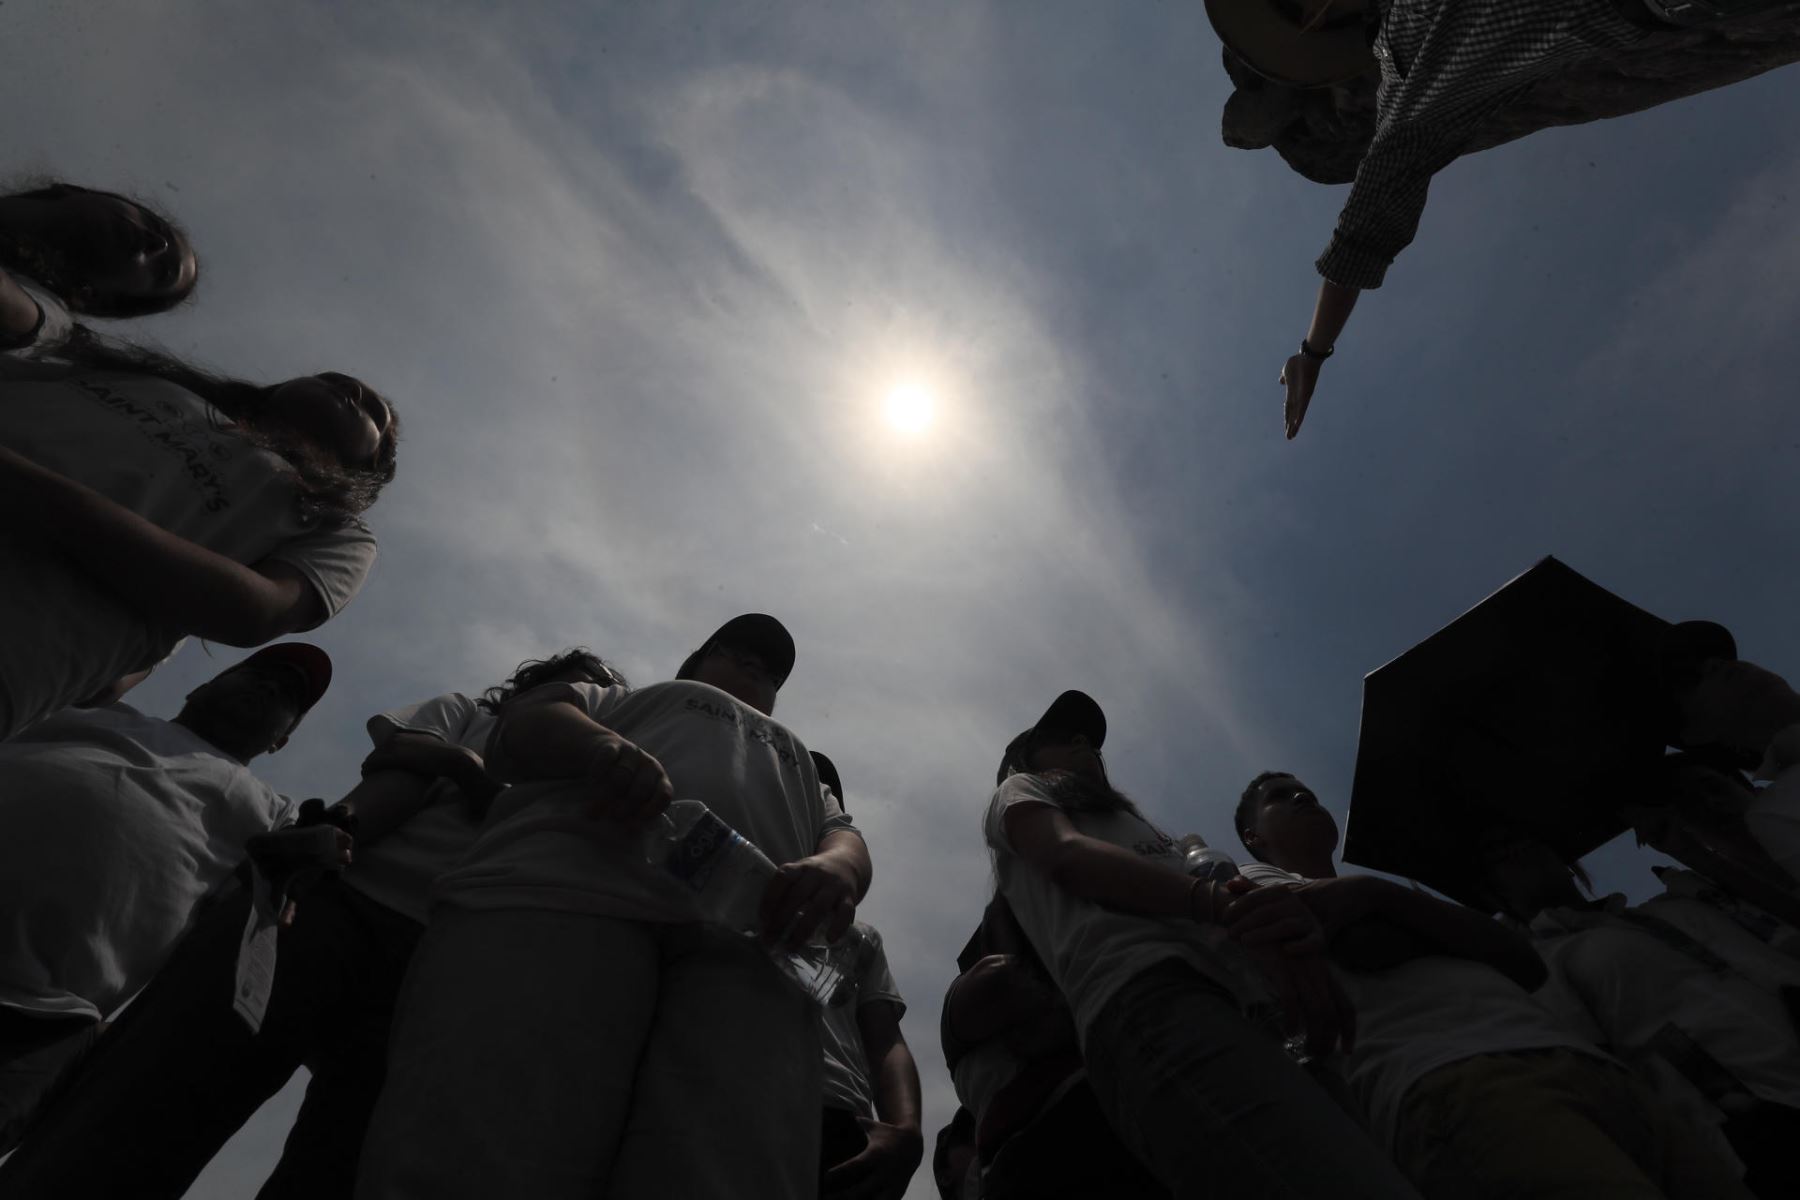 Estudiantes universitarios se reúnen para observar el eclipse solar este lunes en Tegucigalpa (Honduras). La Secretaría de Gestión de Riesgos y Contingencias Nacionales de Honduras anunció el pasado domingo una "alerta verde" (preventiva) que regirá durante dos horas del lunes por el eclipse solar, que se verá parcialmente en el país centroamericano.
Foto: EFE